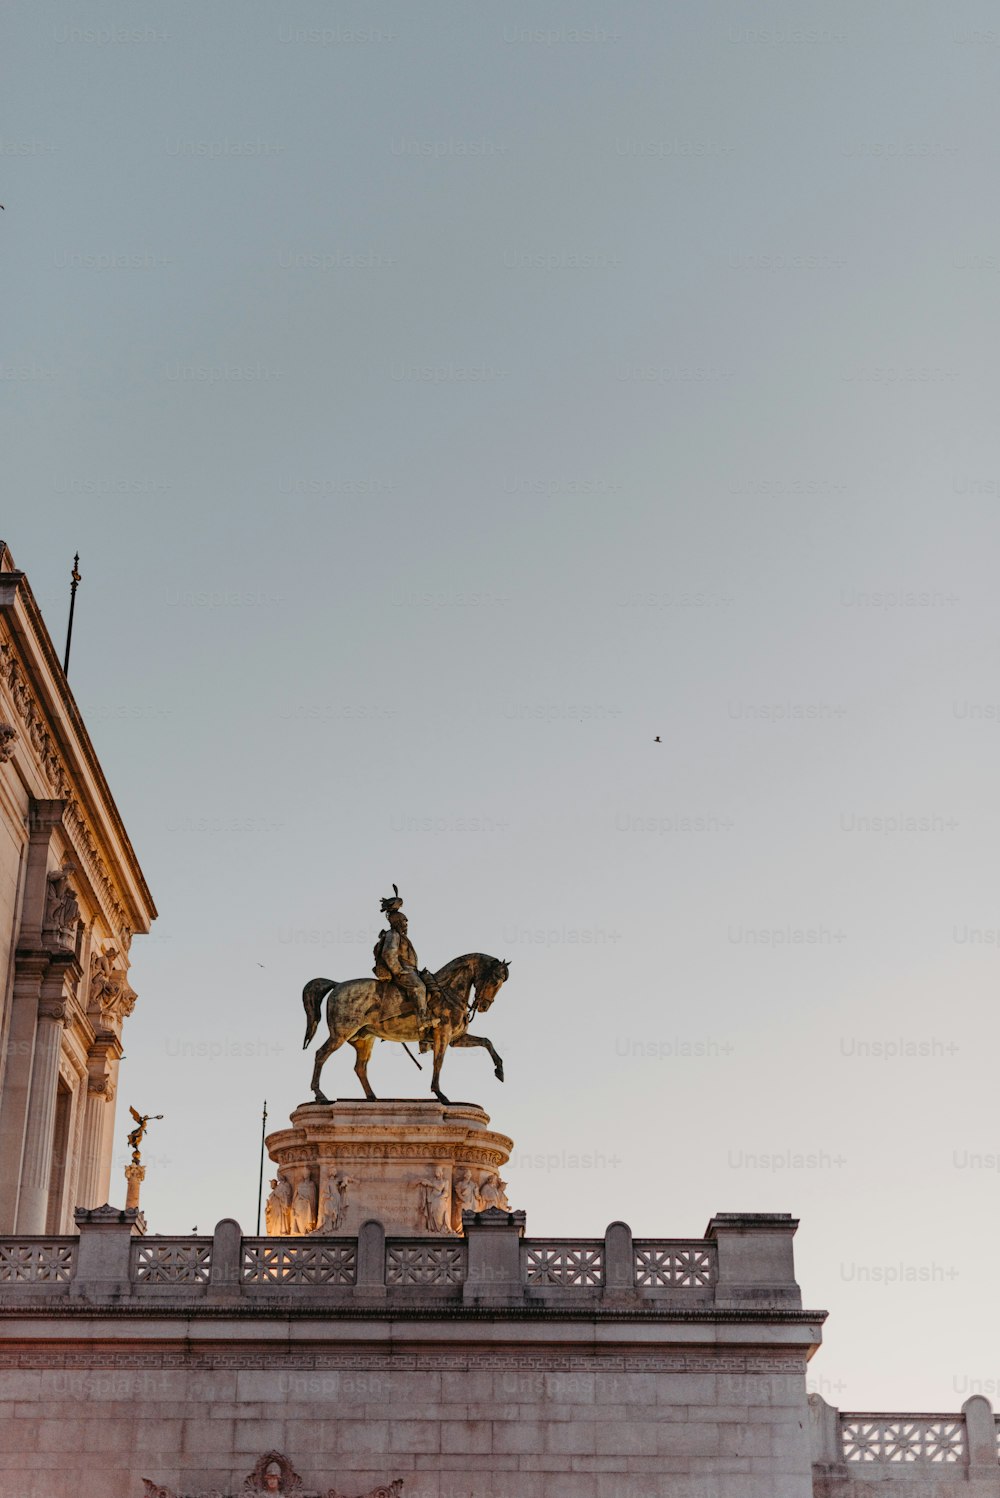 uma estátua de um homem em um cavalo no topo de um edifício